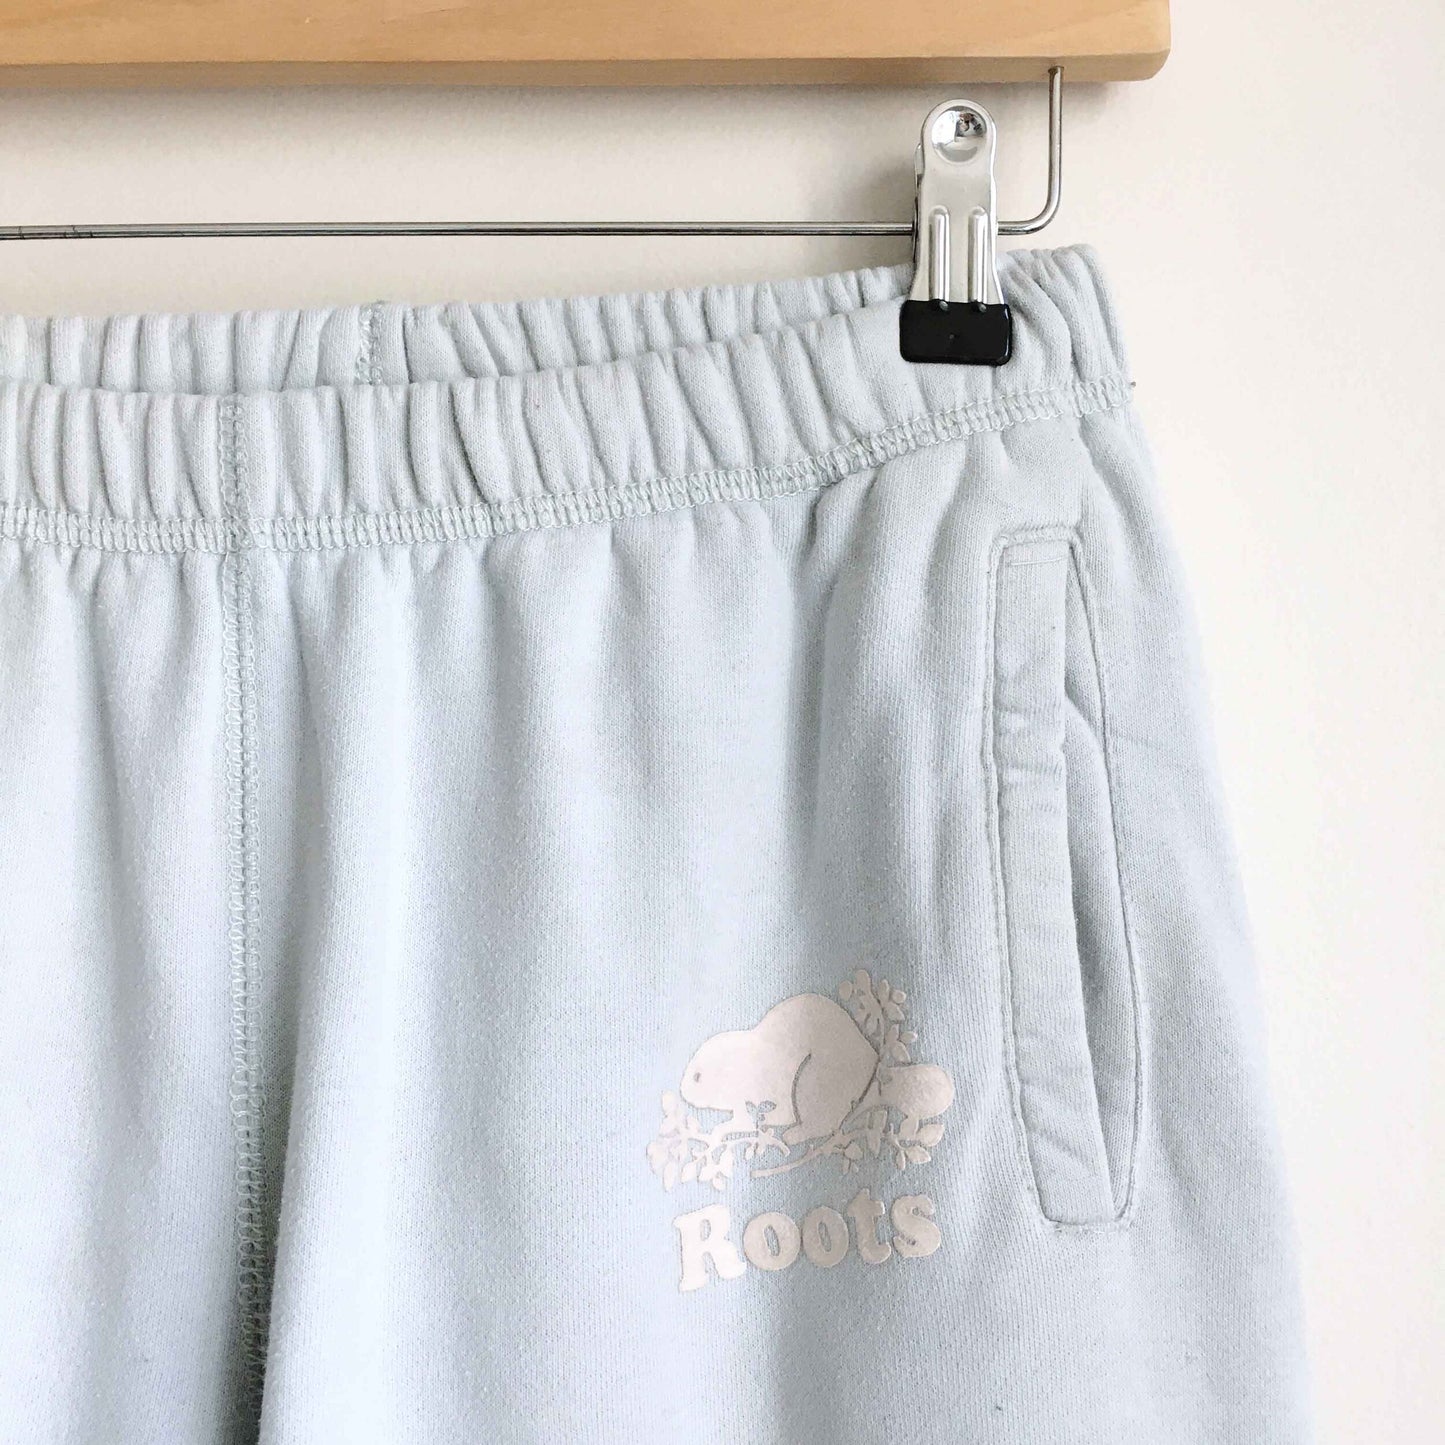 Roots light blue original sweatpants - size xs